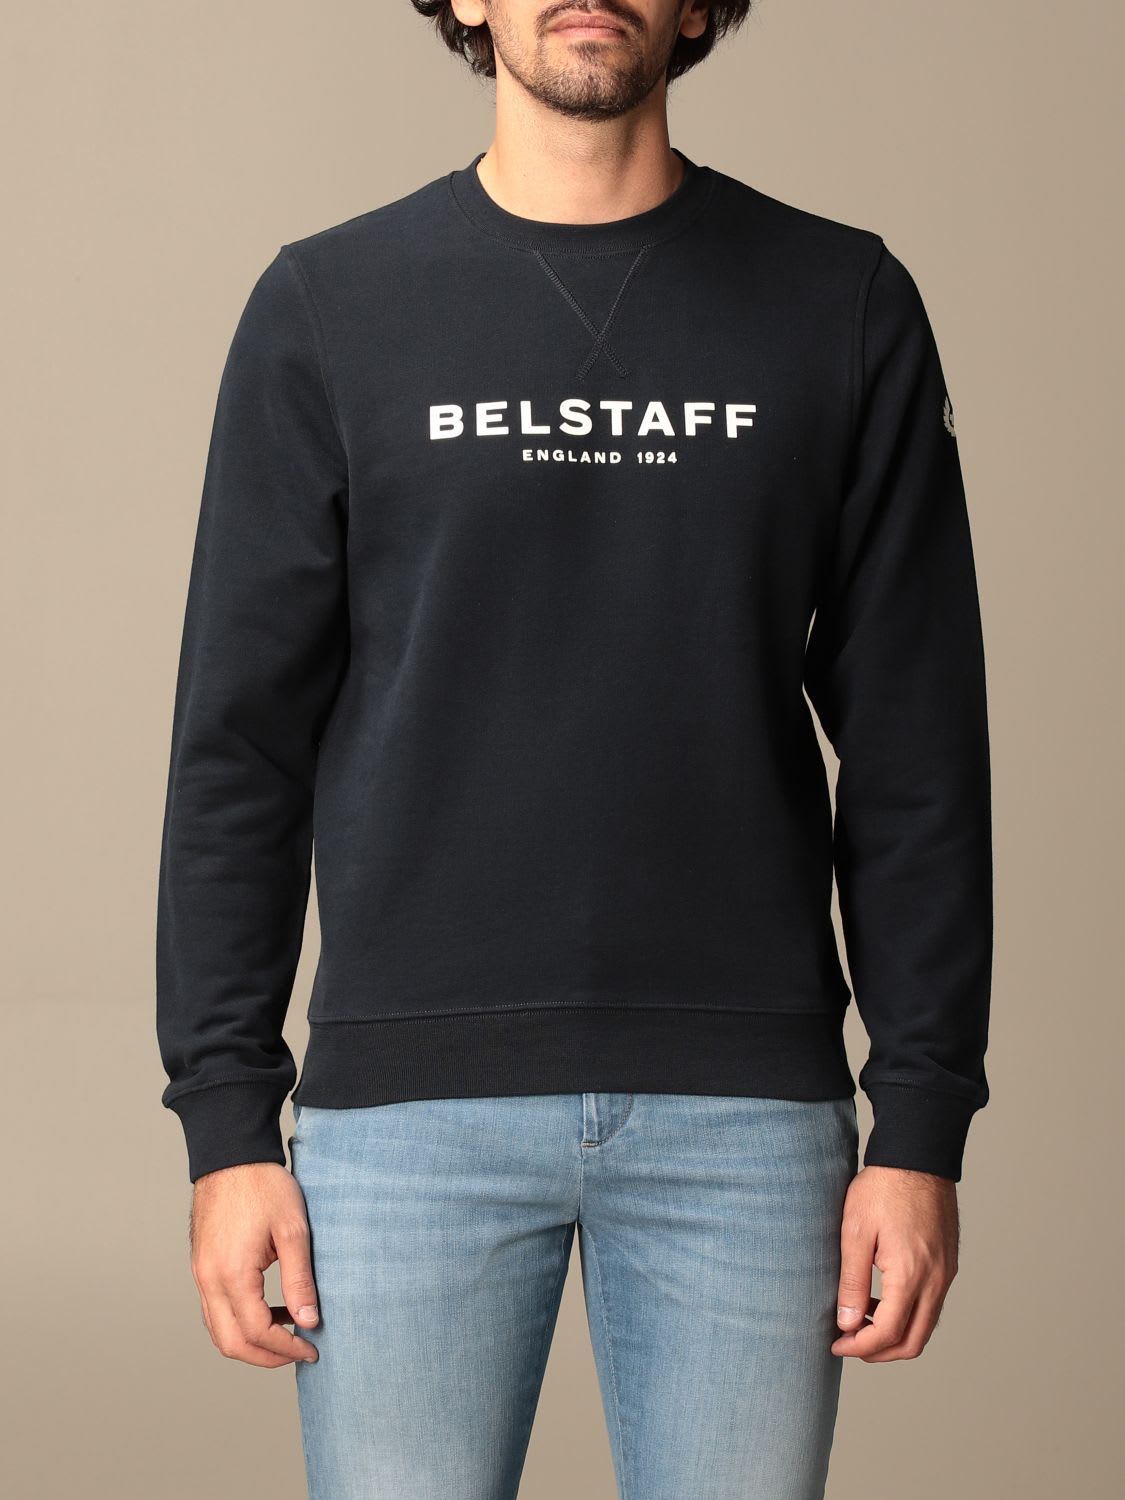 Belstaff Sweatshirt Belstaff Crewneck Sweatshirt In Cotton With Logo Print